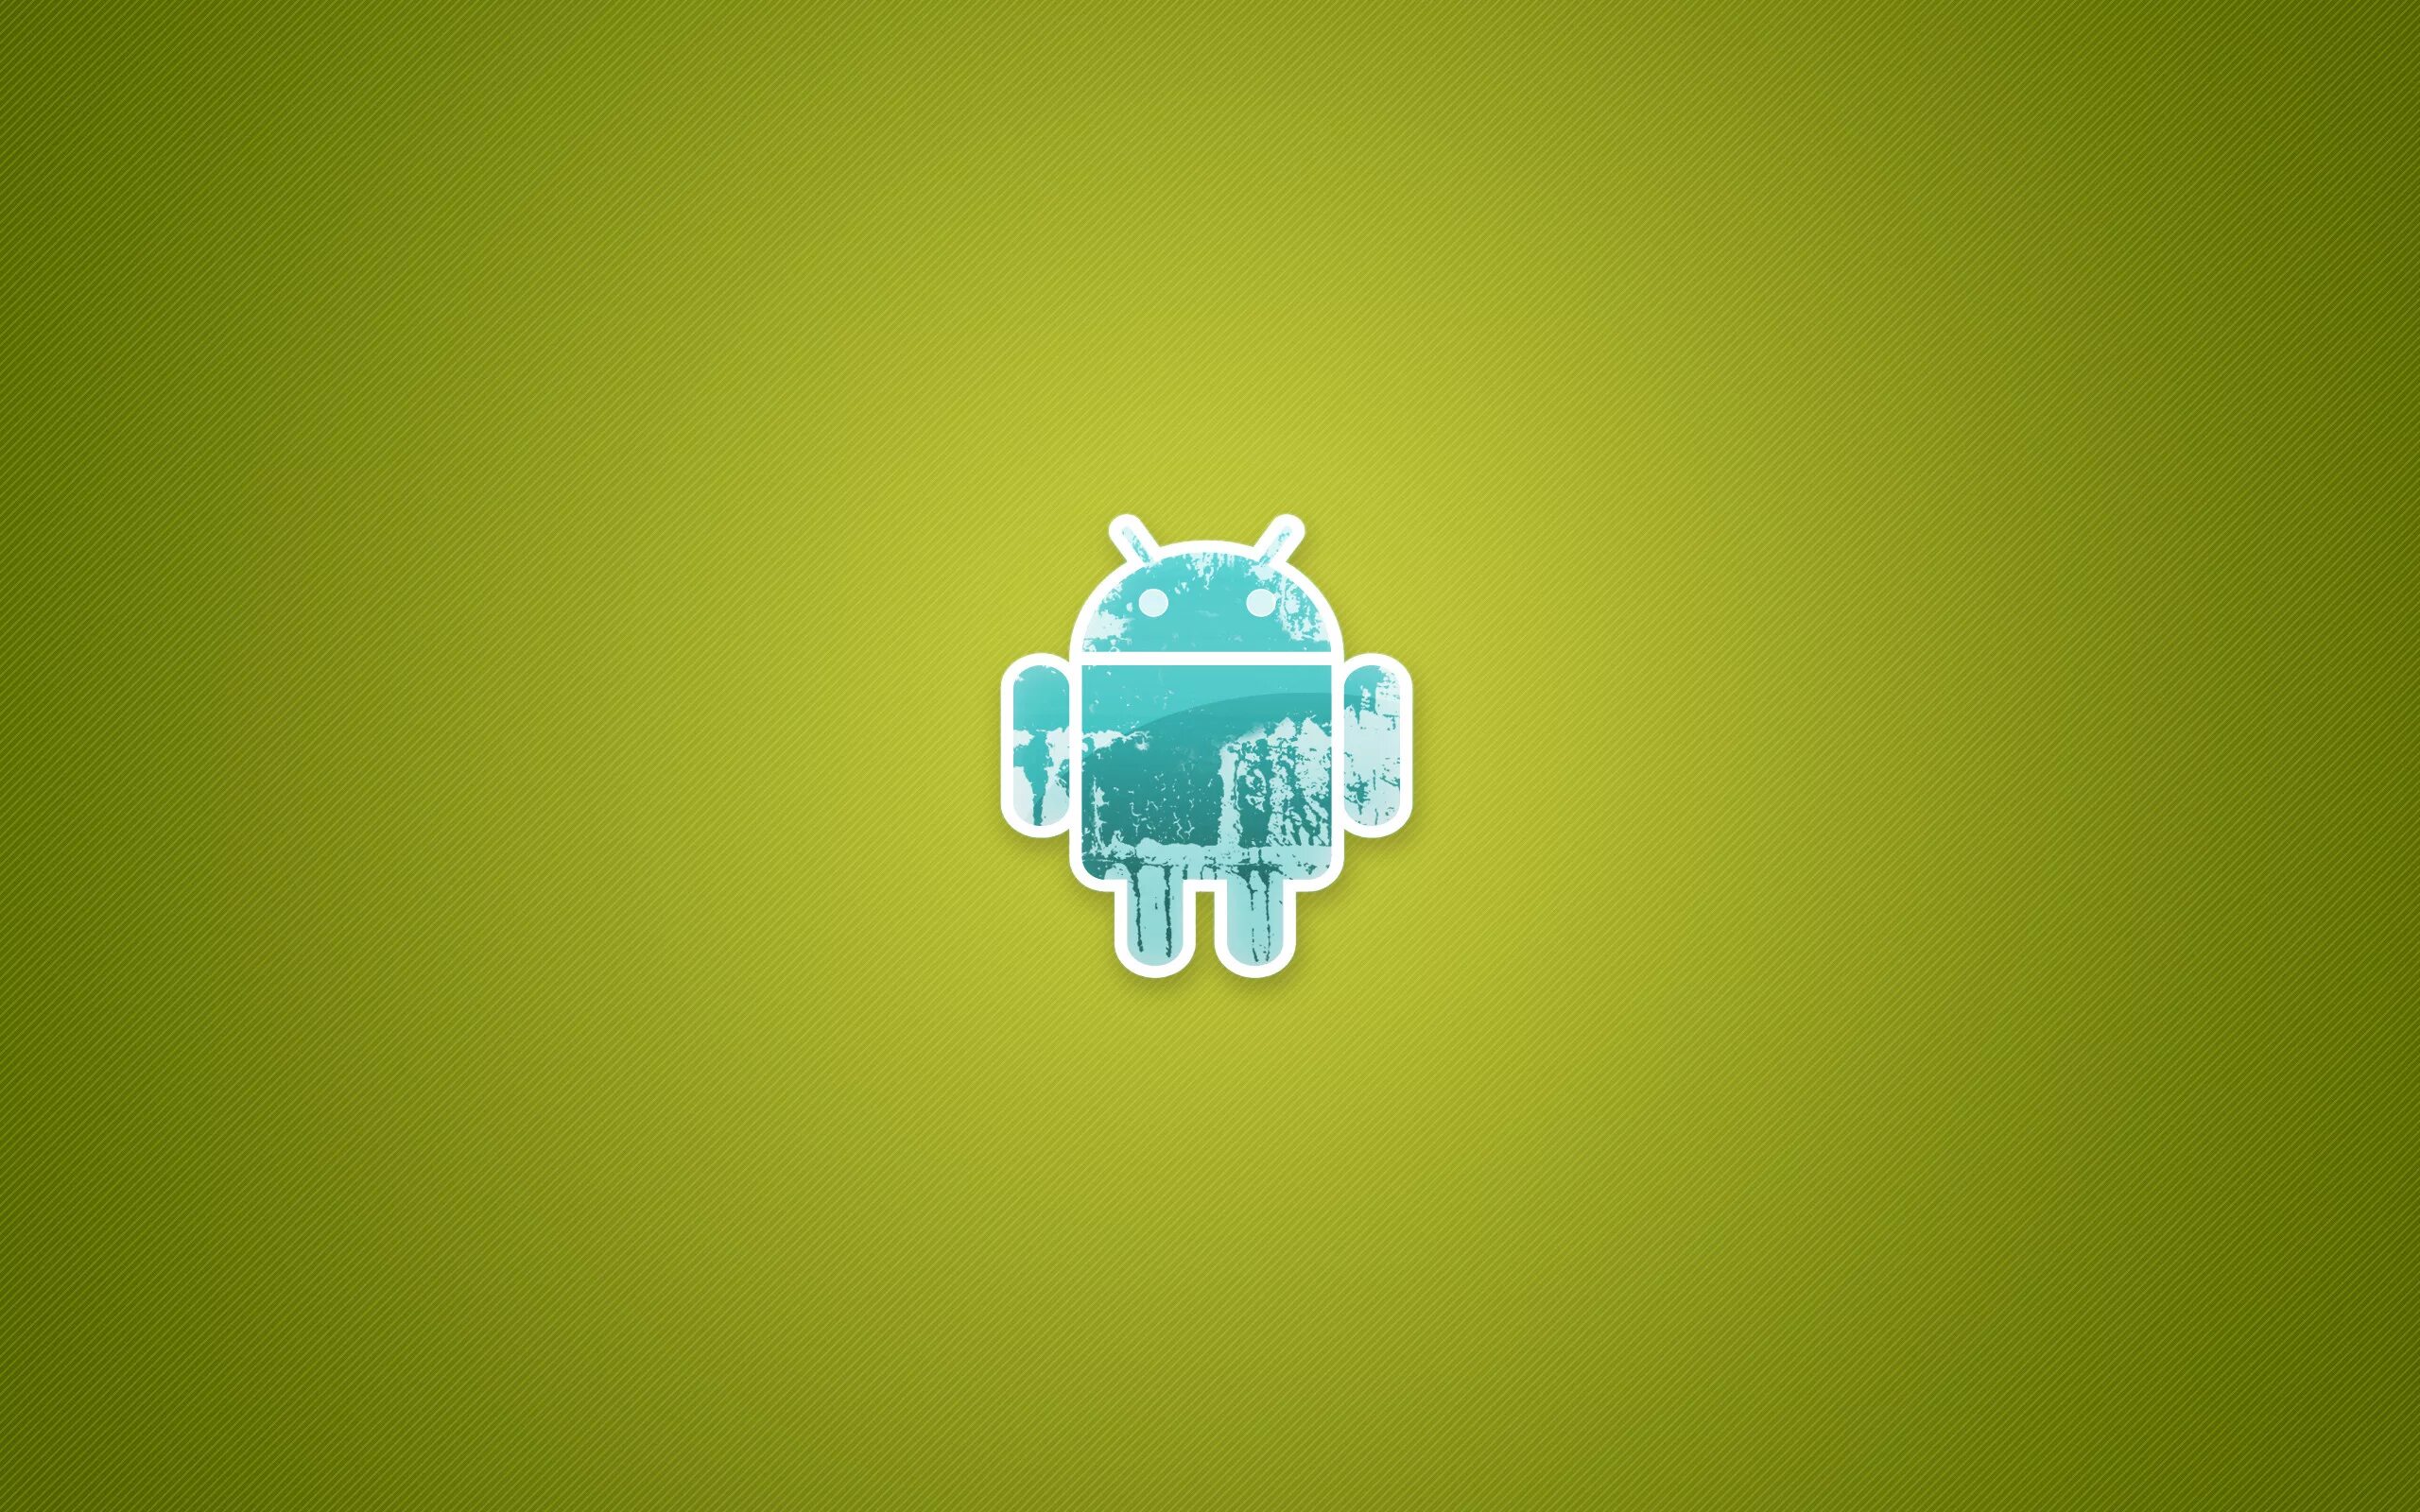 Обои на андроид. Обои на рабочий стол Android. Логотип андроид. Обои на планшет андроид.